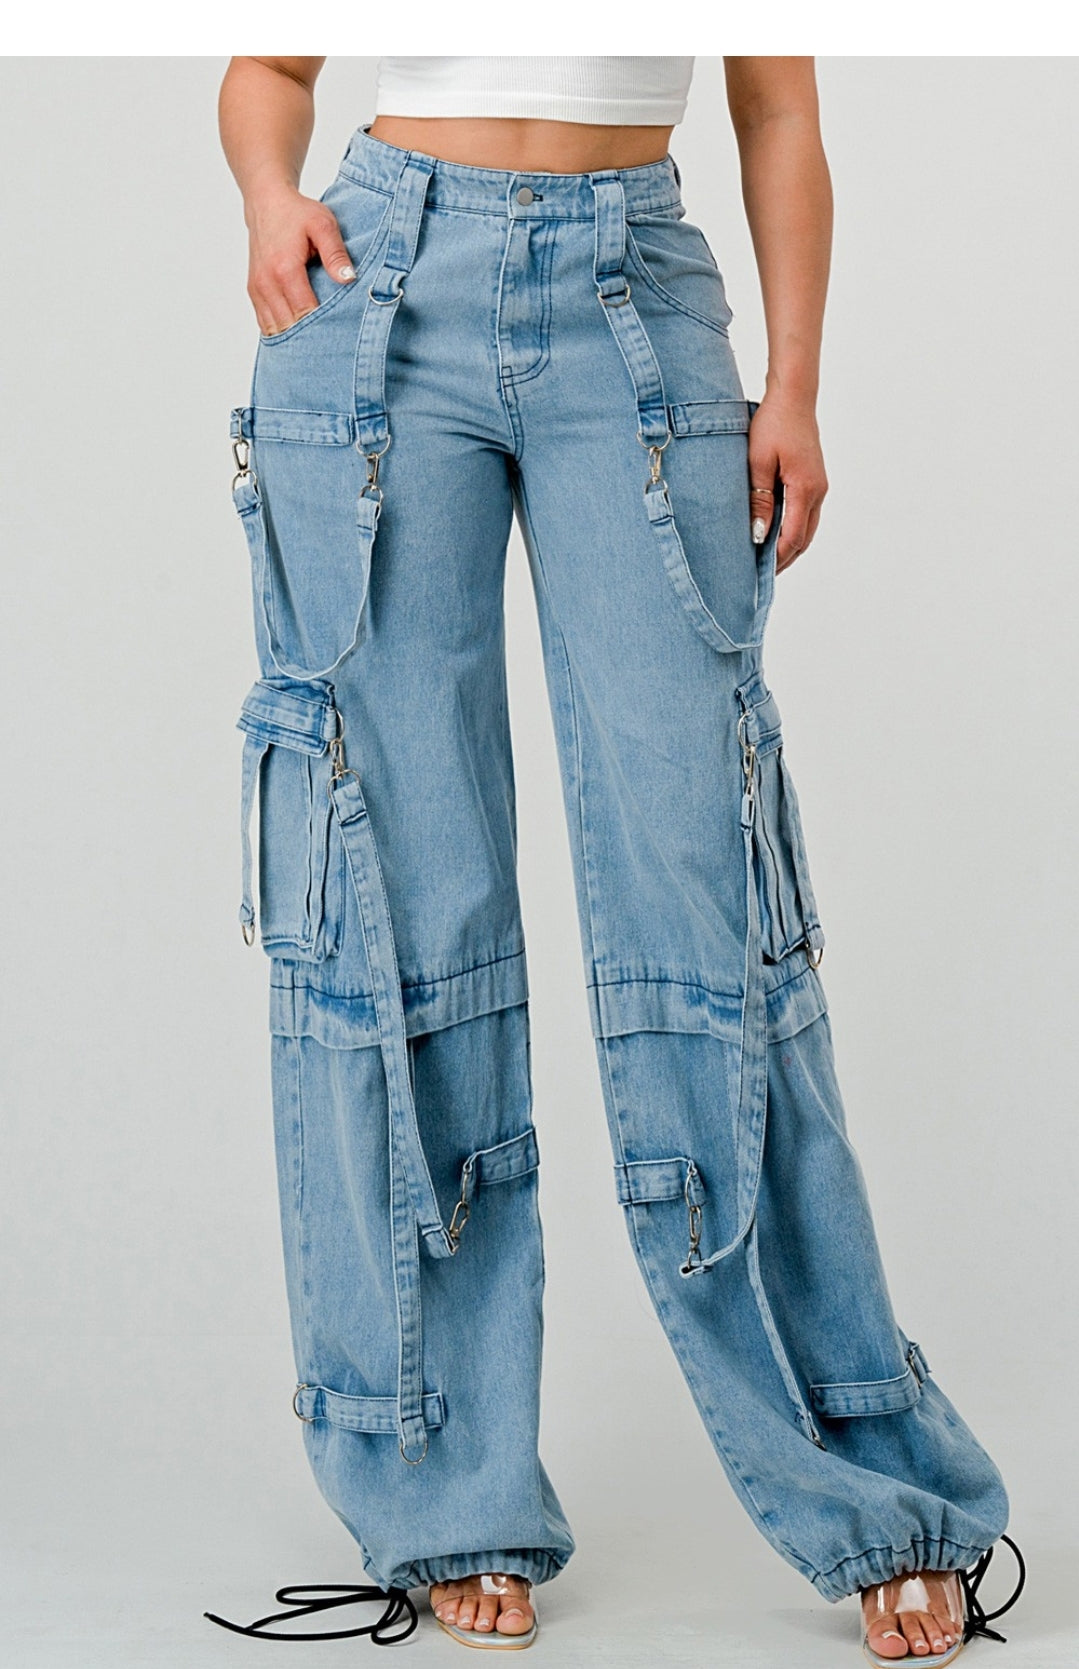 Jeanie jeans